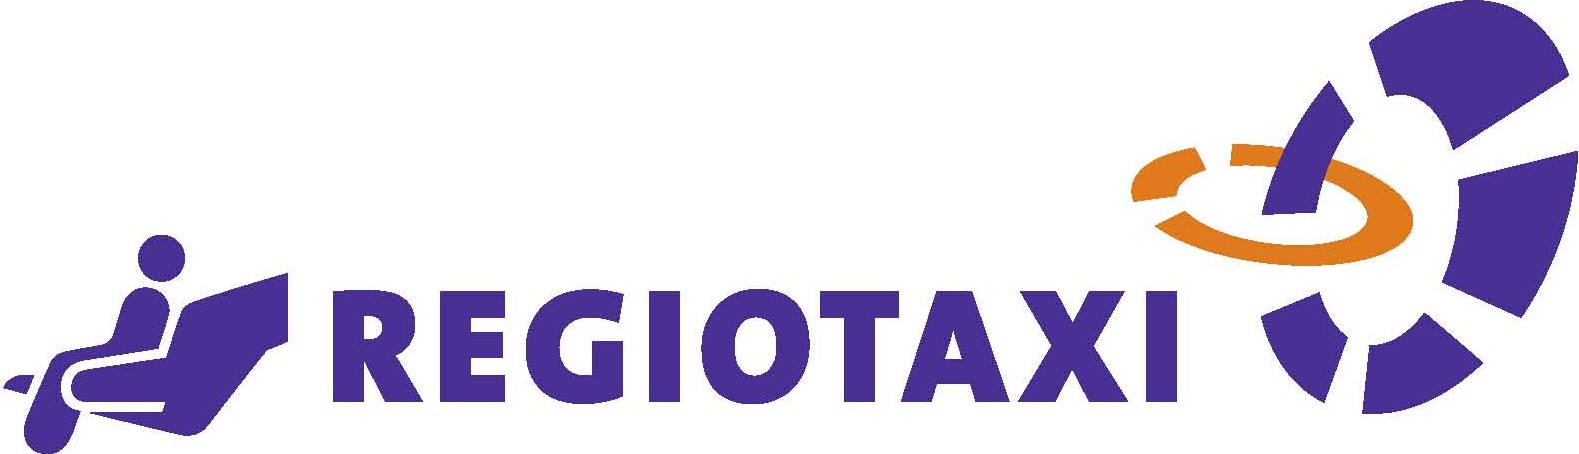 Regiotaxi logo 2007